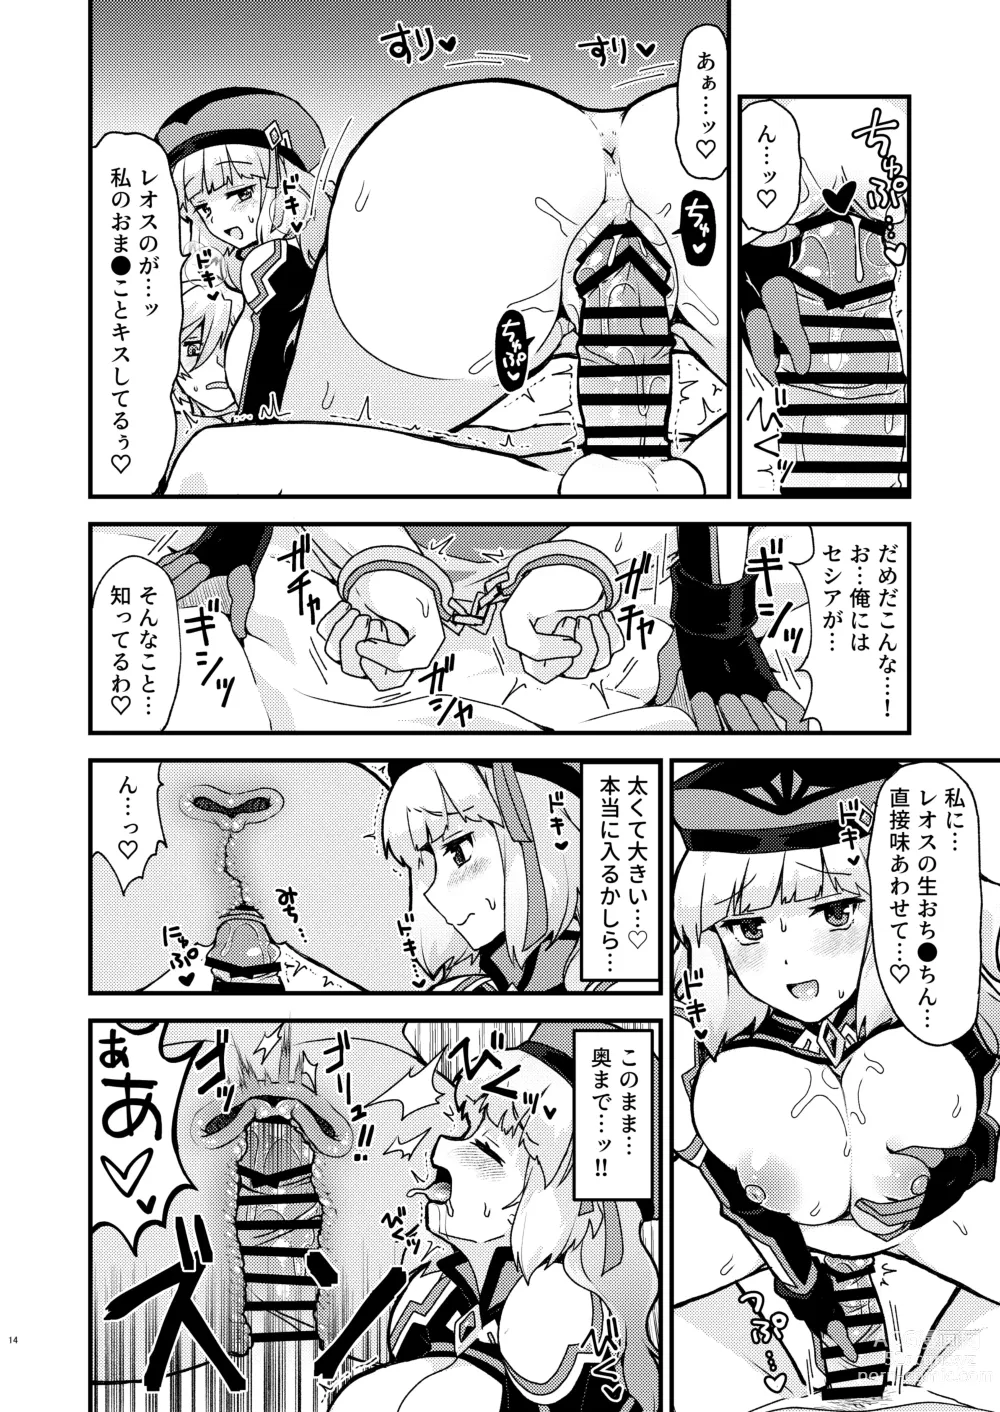 Page 14 of doujinshi Nono Kyoushuu - ASSAULT by NONO